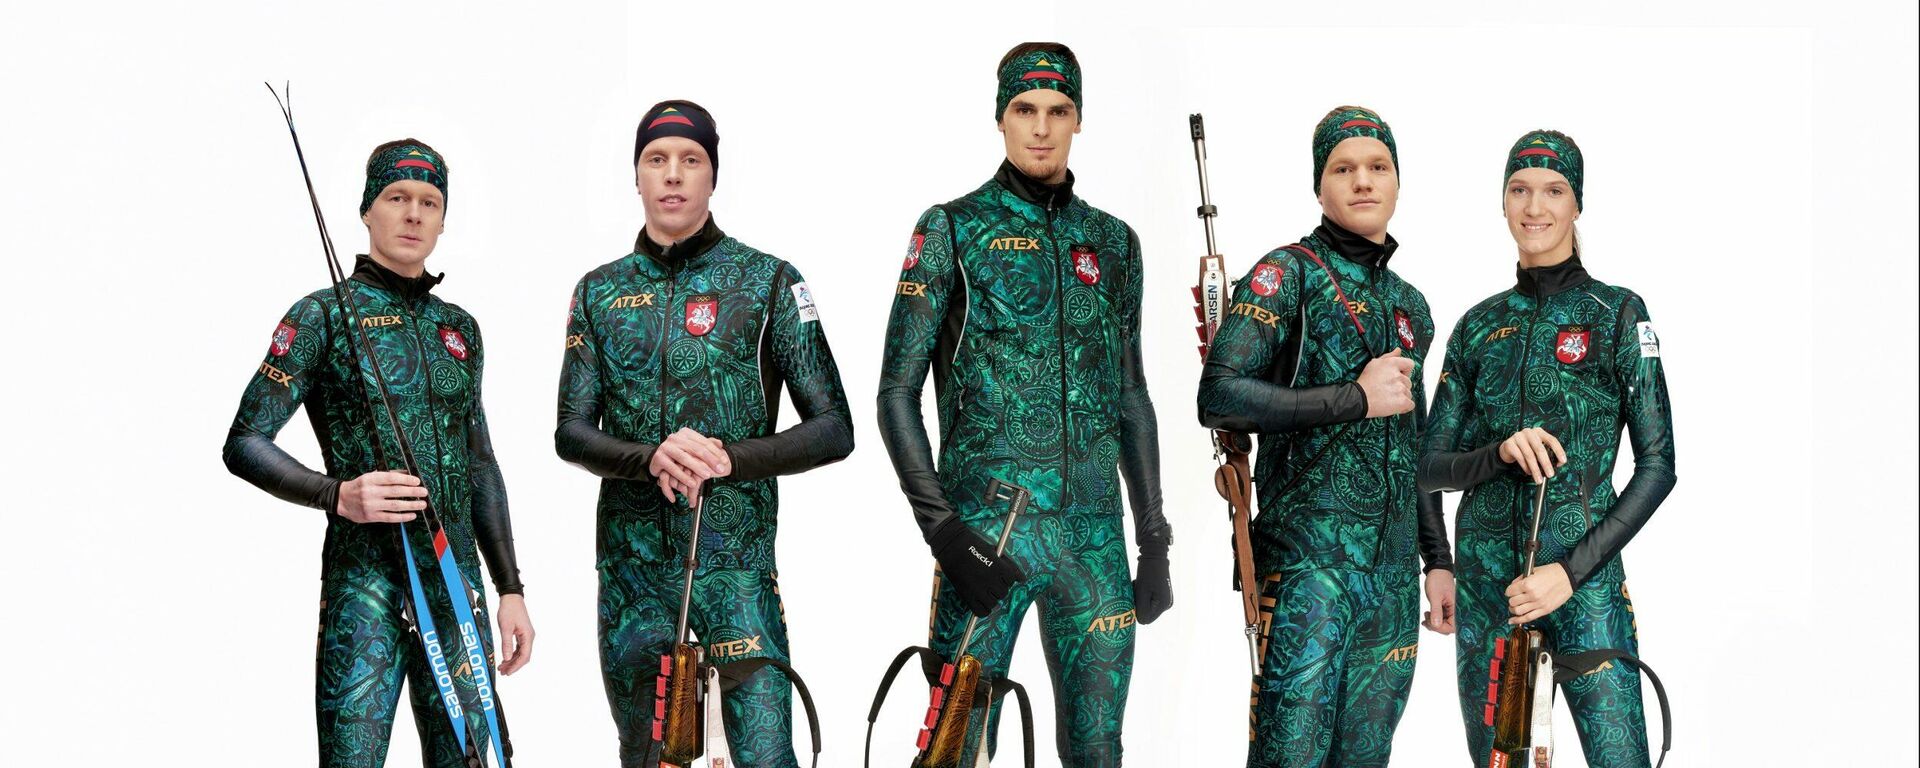 Литовские биатлонисты в форме для Олимпийских игр в Пекине - Sputnik Lietuva, 1920, 27.01.2022